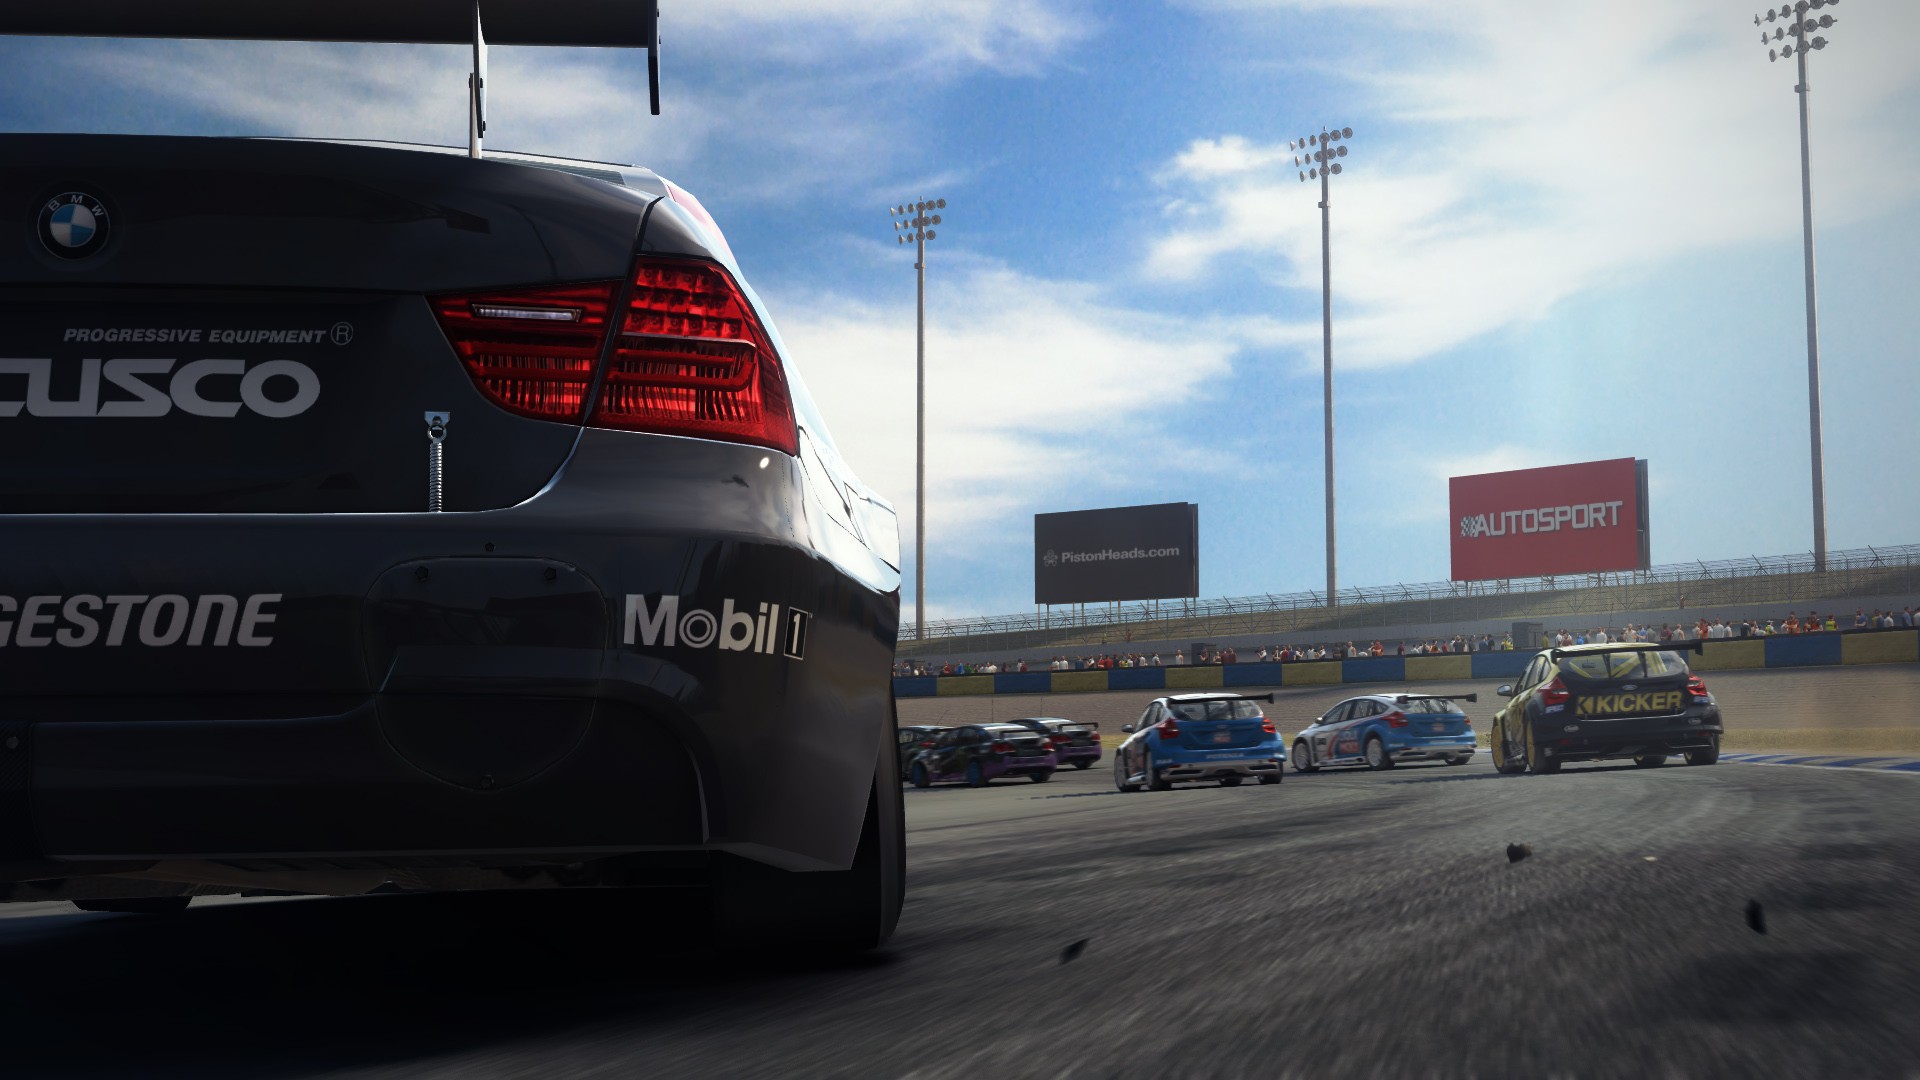 Re-Volt3, jogo de corrida de carros, aparece com gráfico renovado